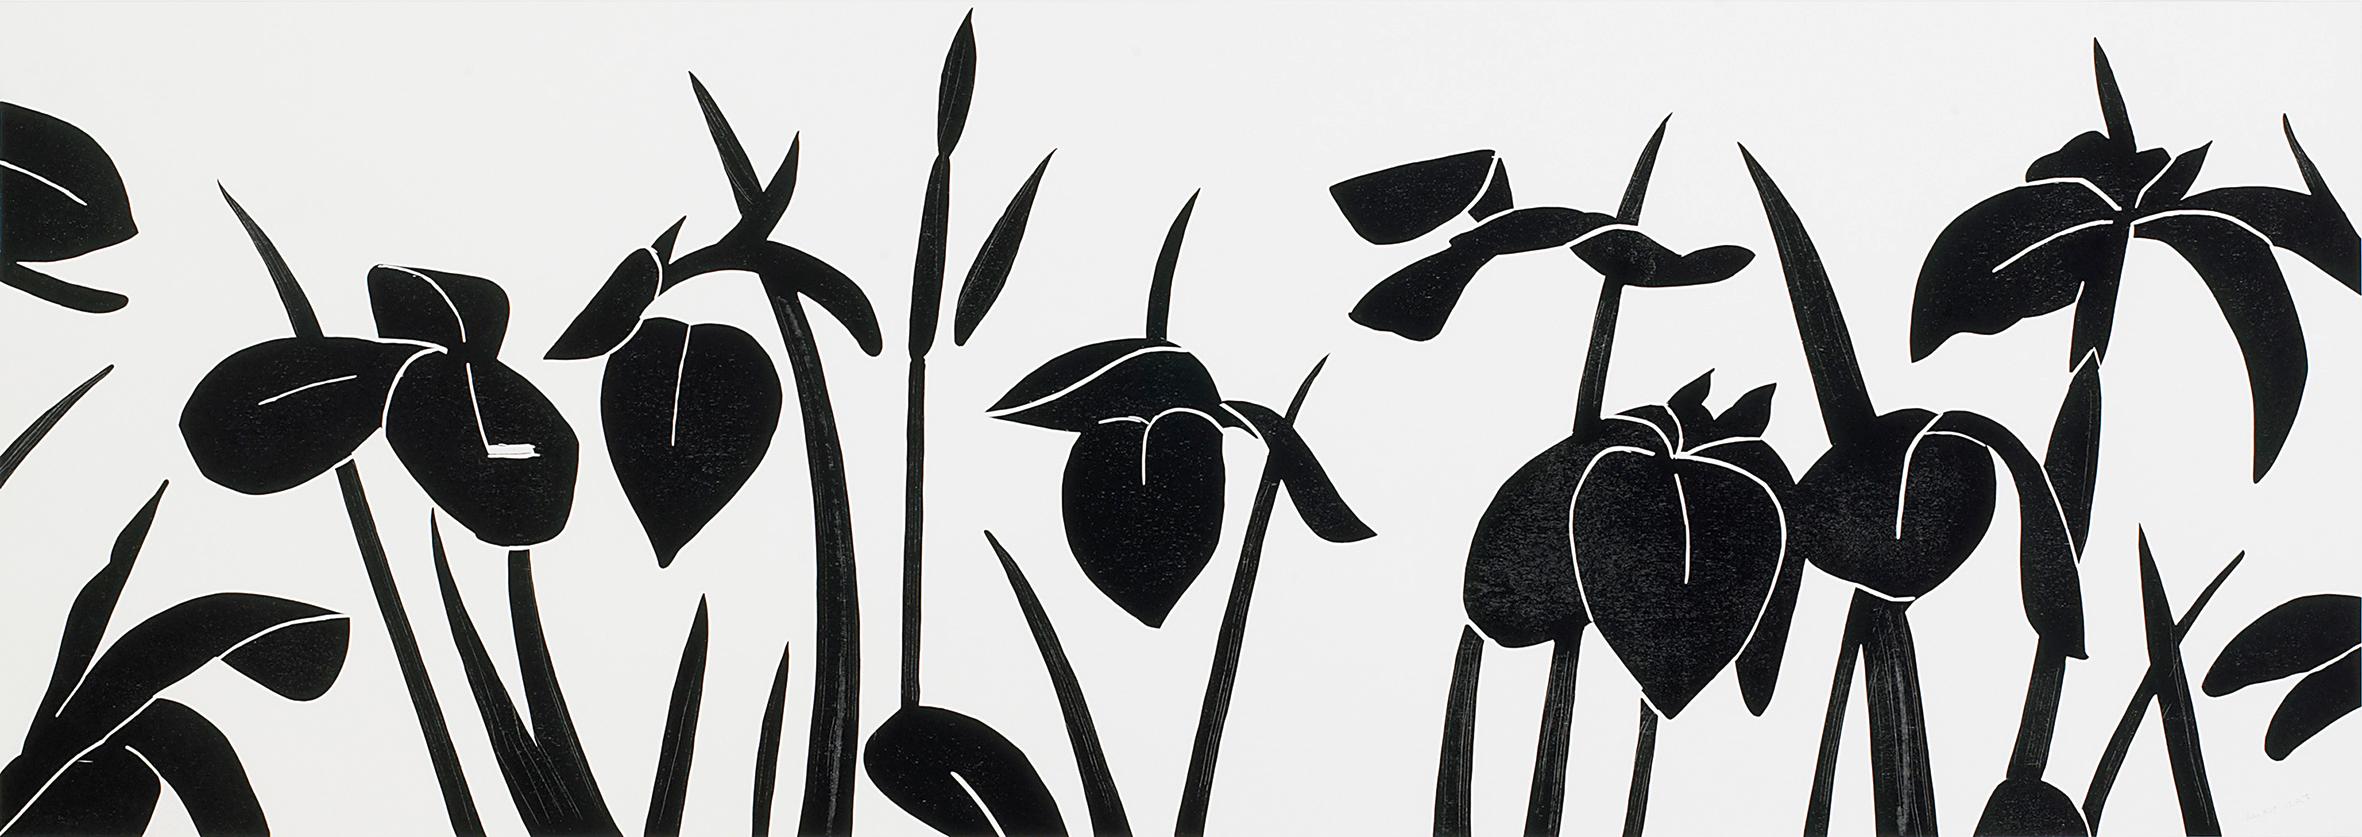 Landscape Print Alex Katz - Drapeau - gravure sur bois, fleurs, drapeaux, Katz, noir et blanc